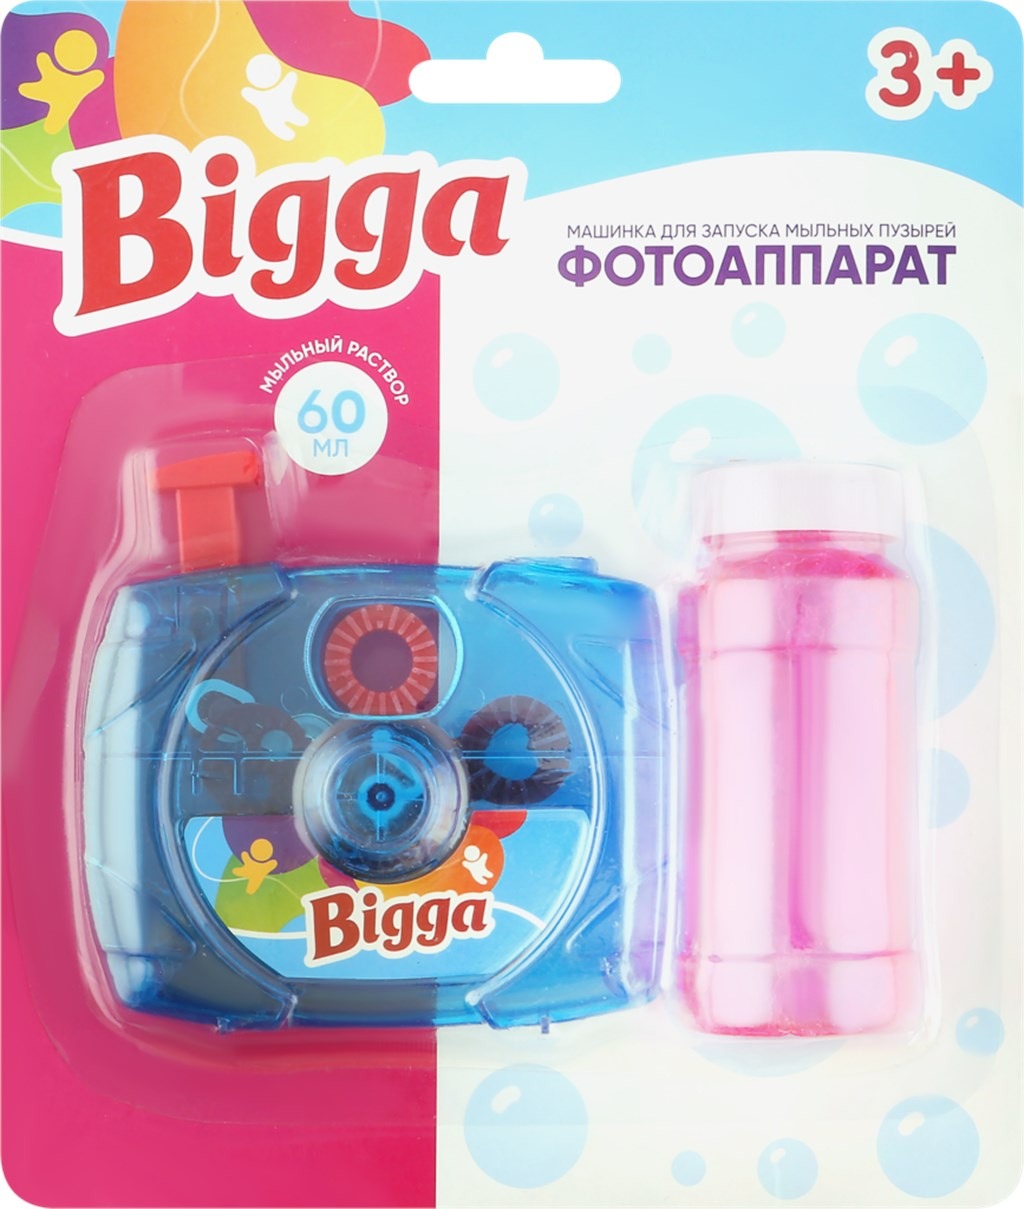 Машинка для мыльных пузырей Фотоаппарат Bigga 50 мл